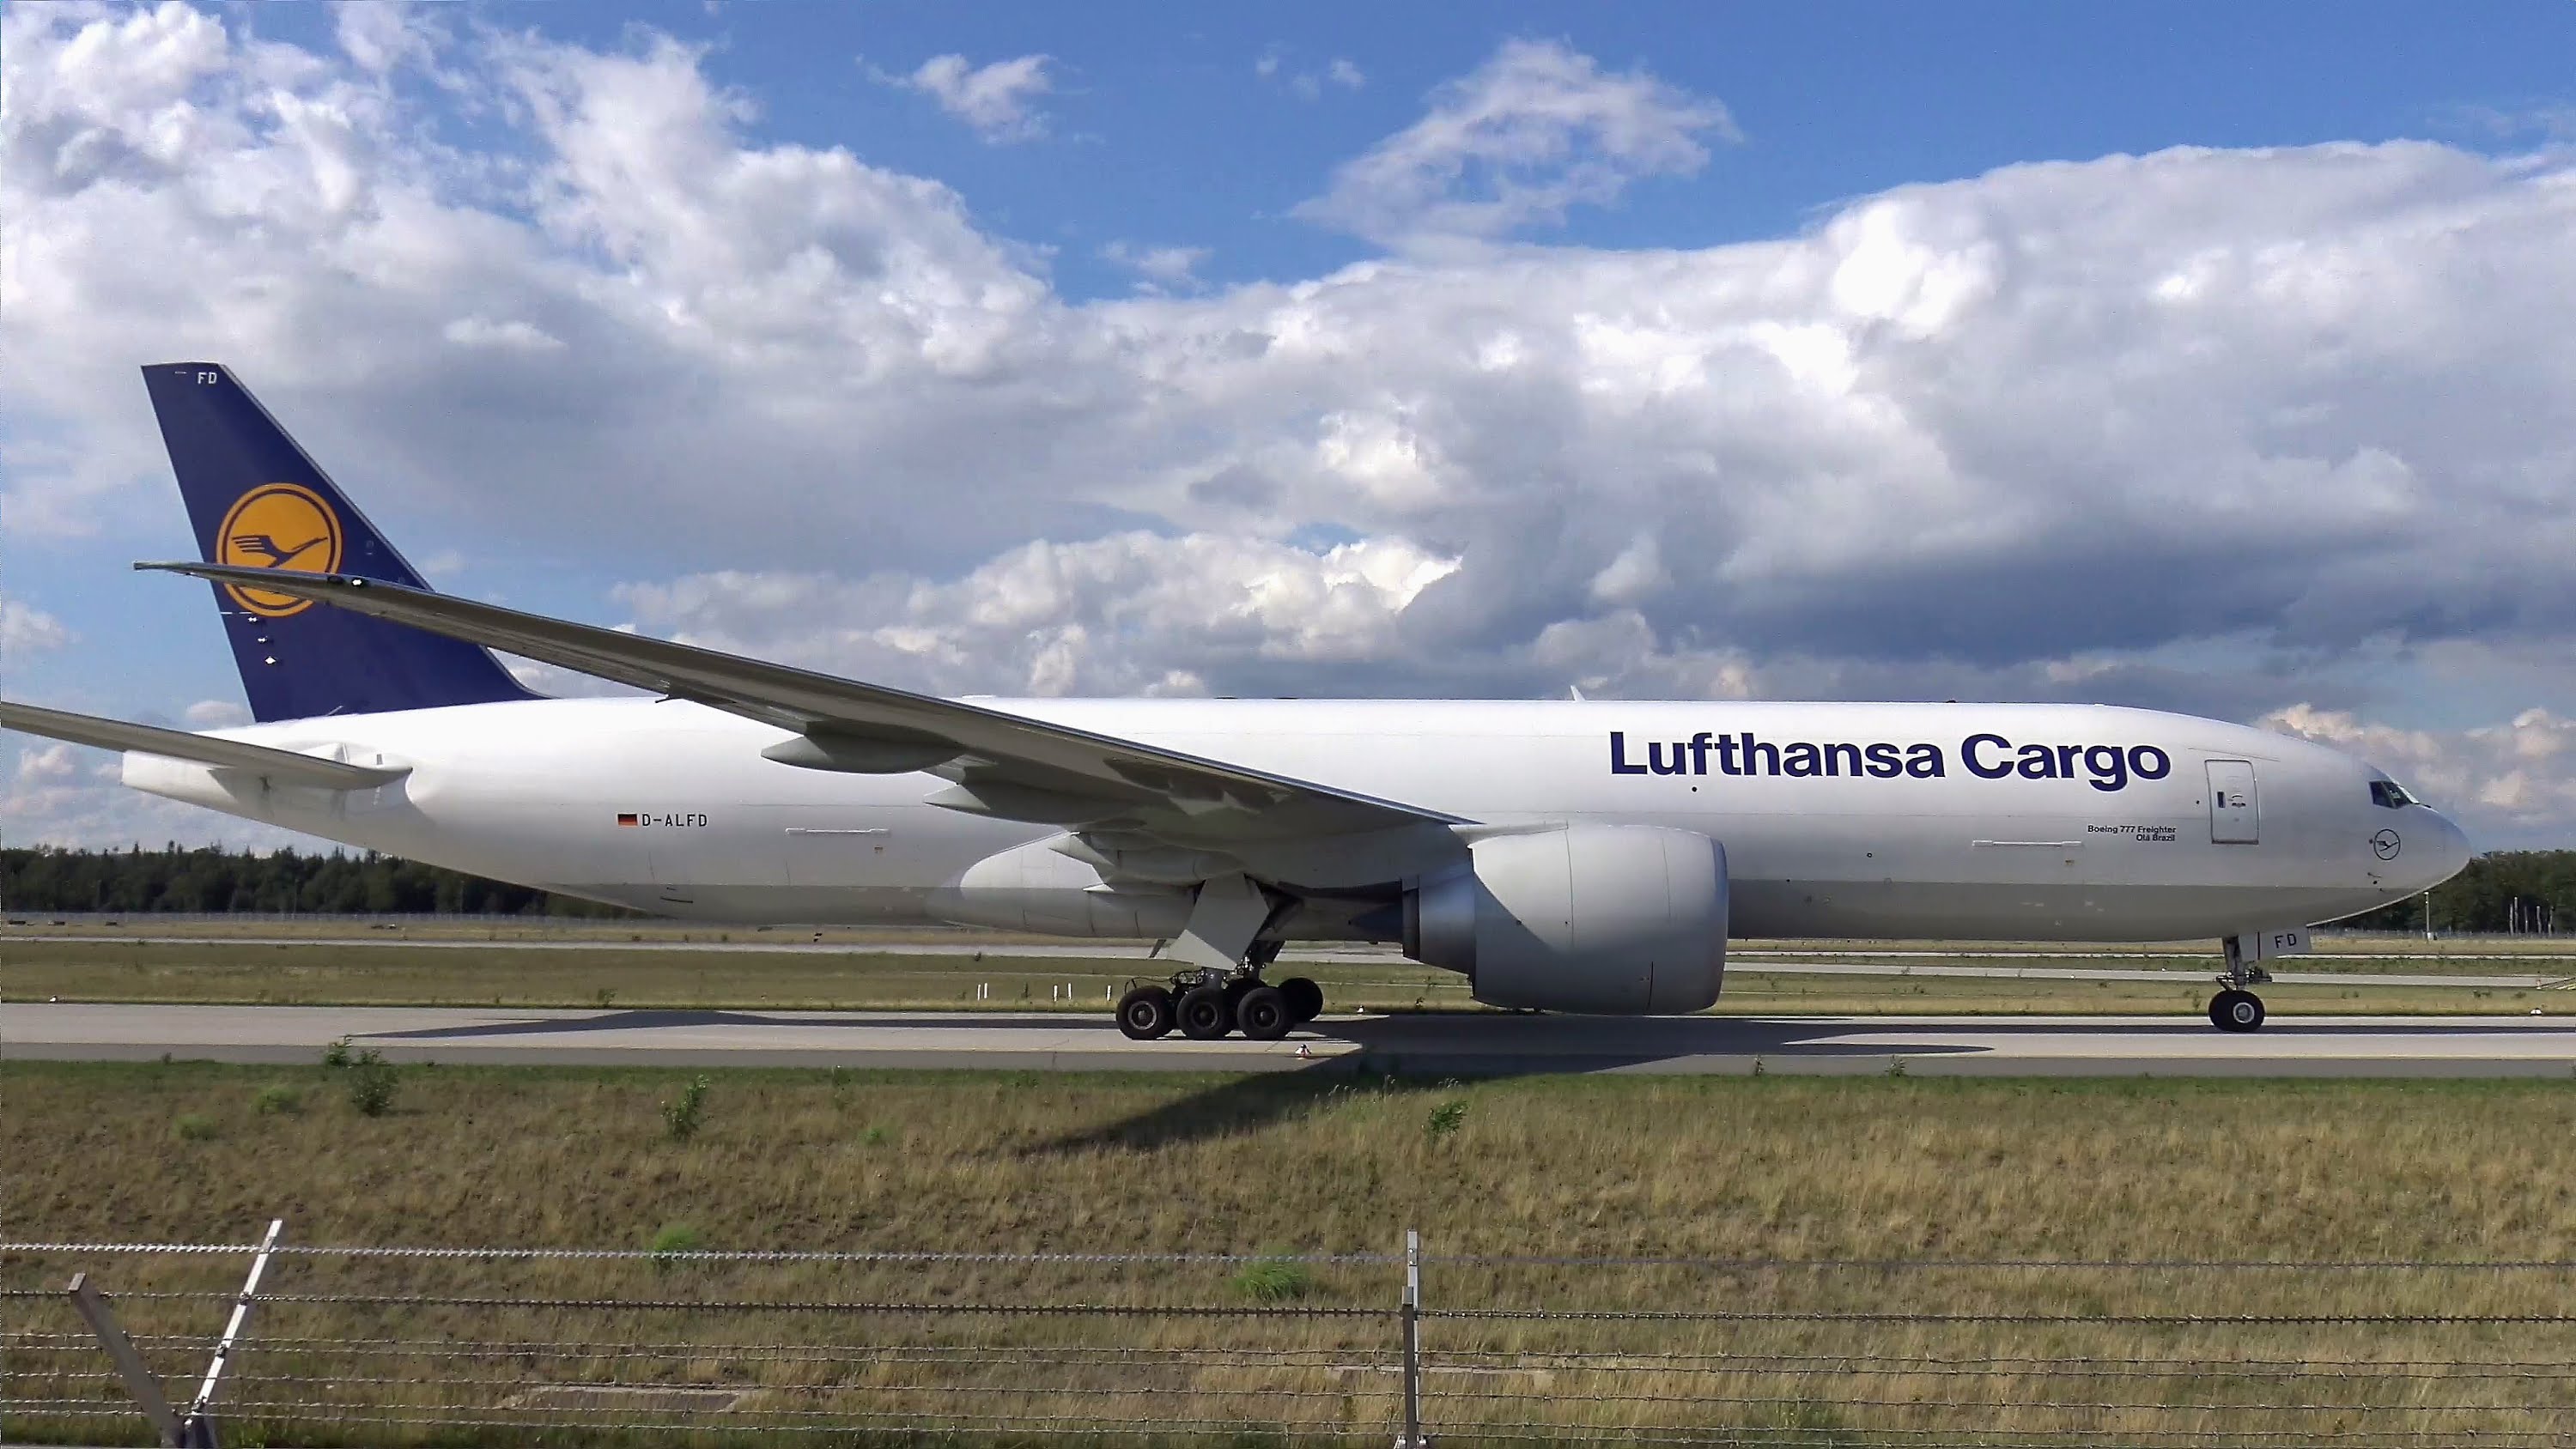 A német társaság most még csak teherszállító 777-eseket üzemeltet